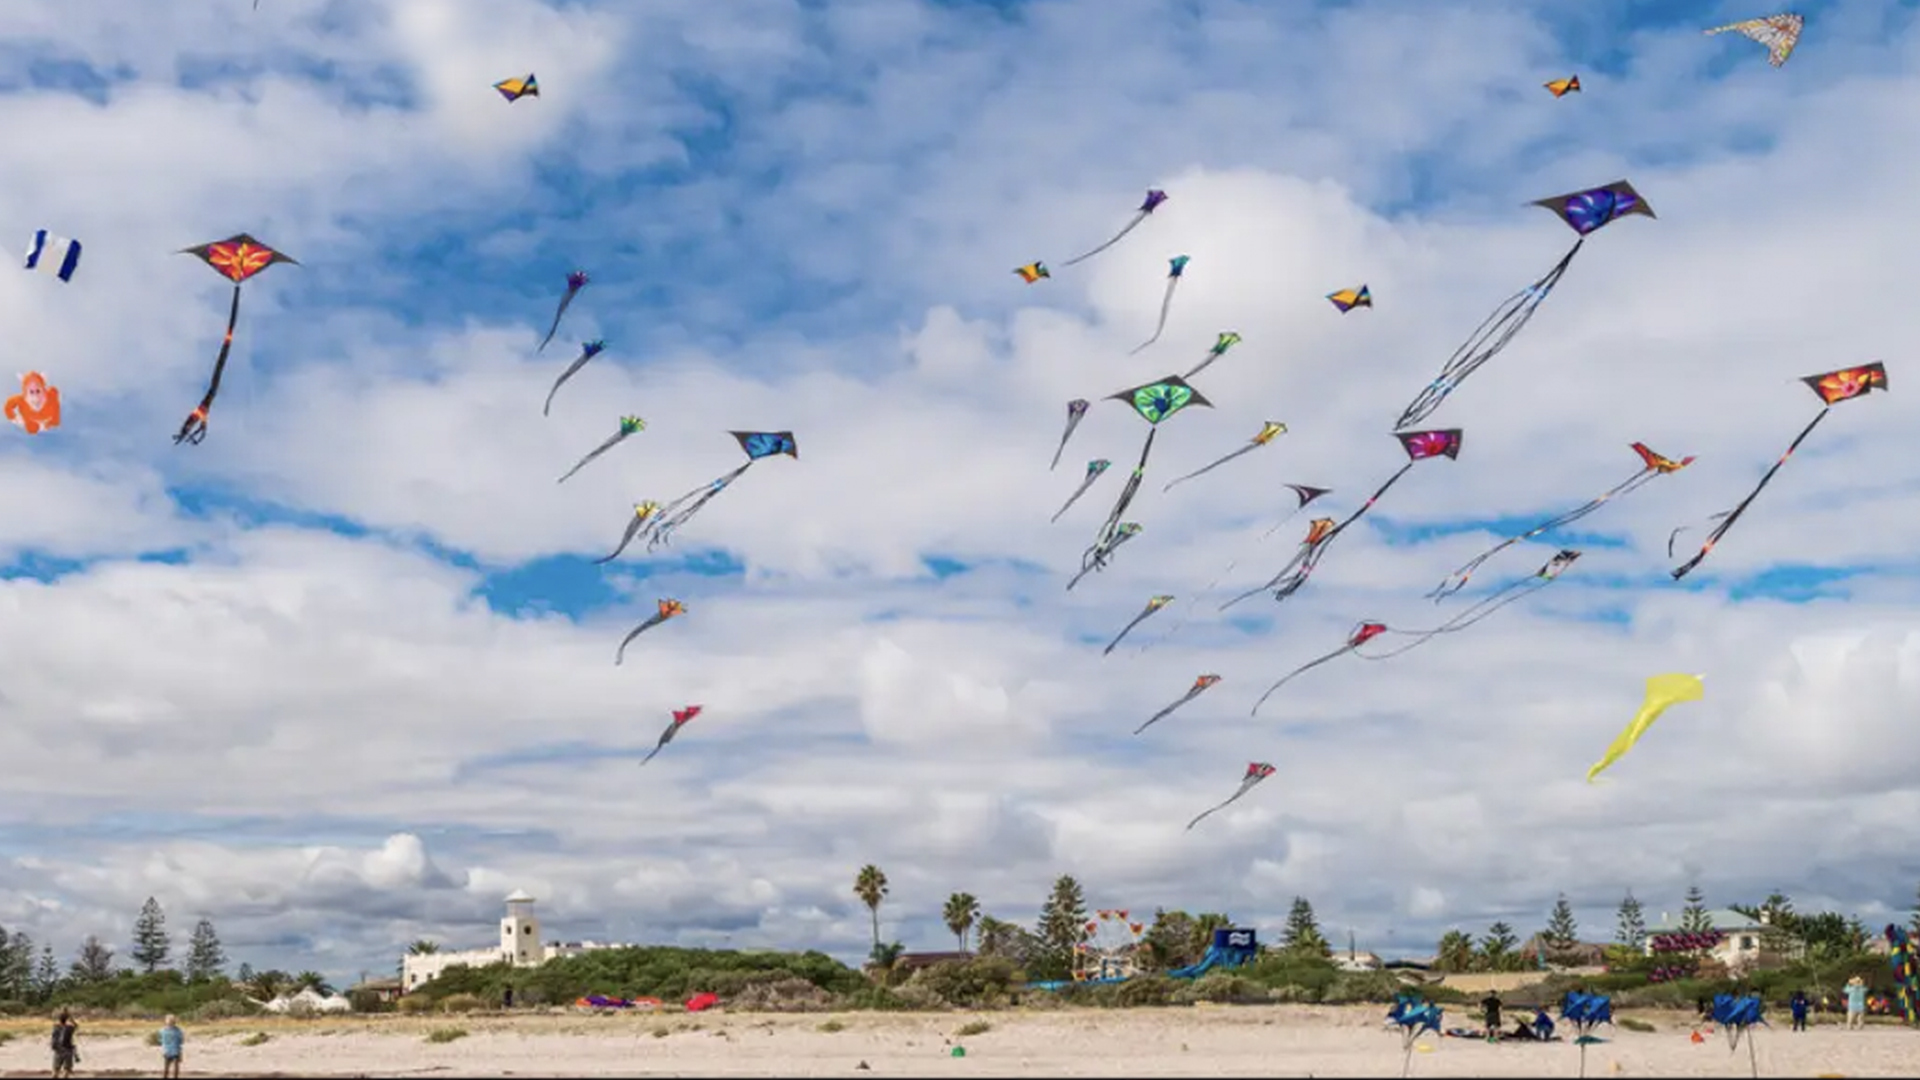 Amazing kite